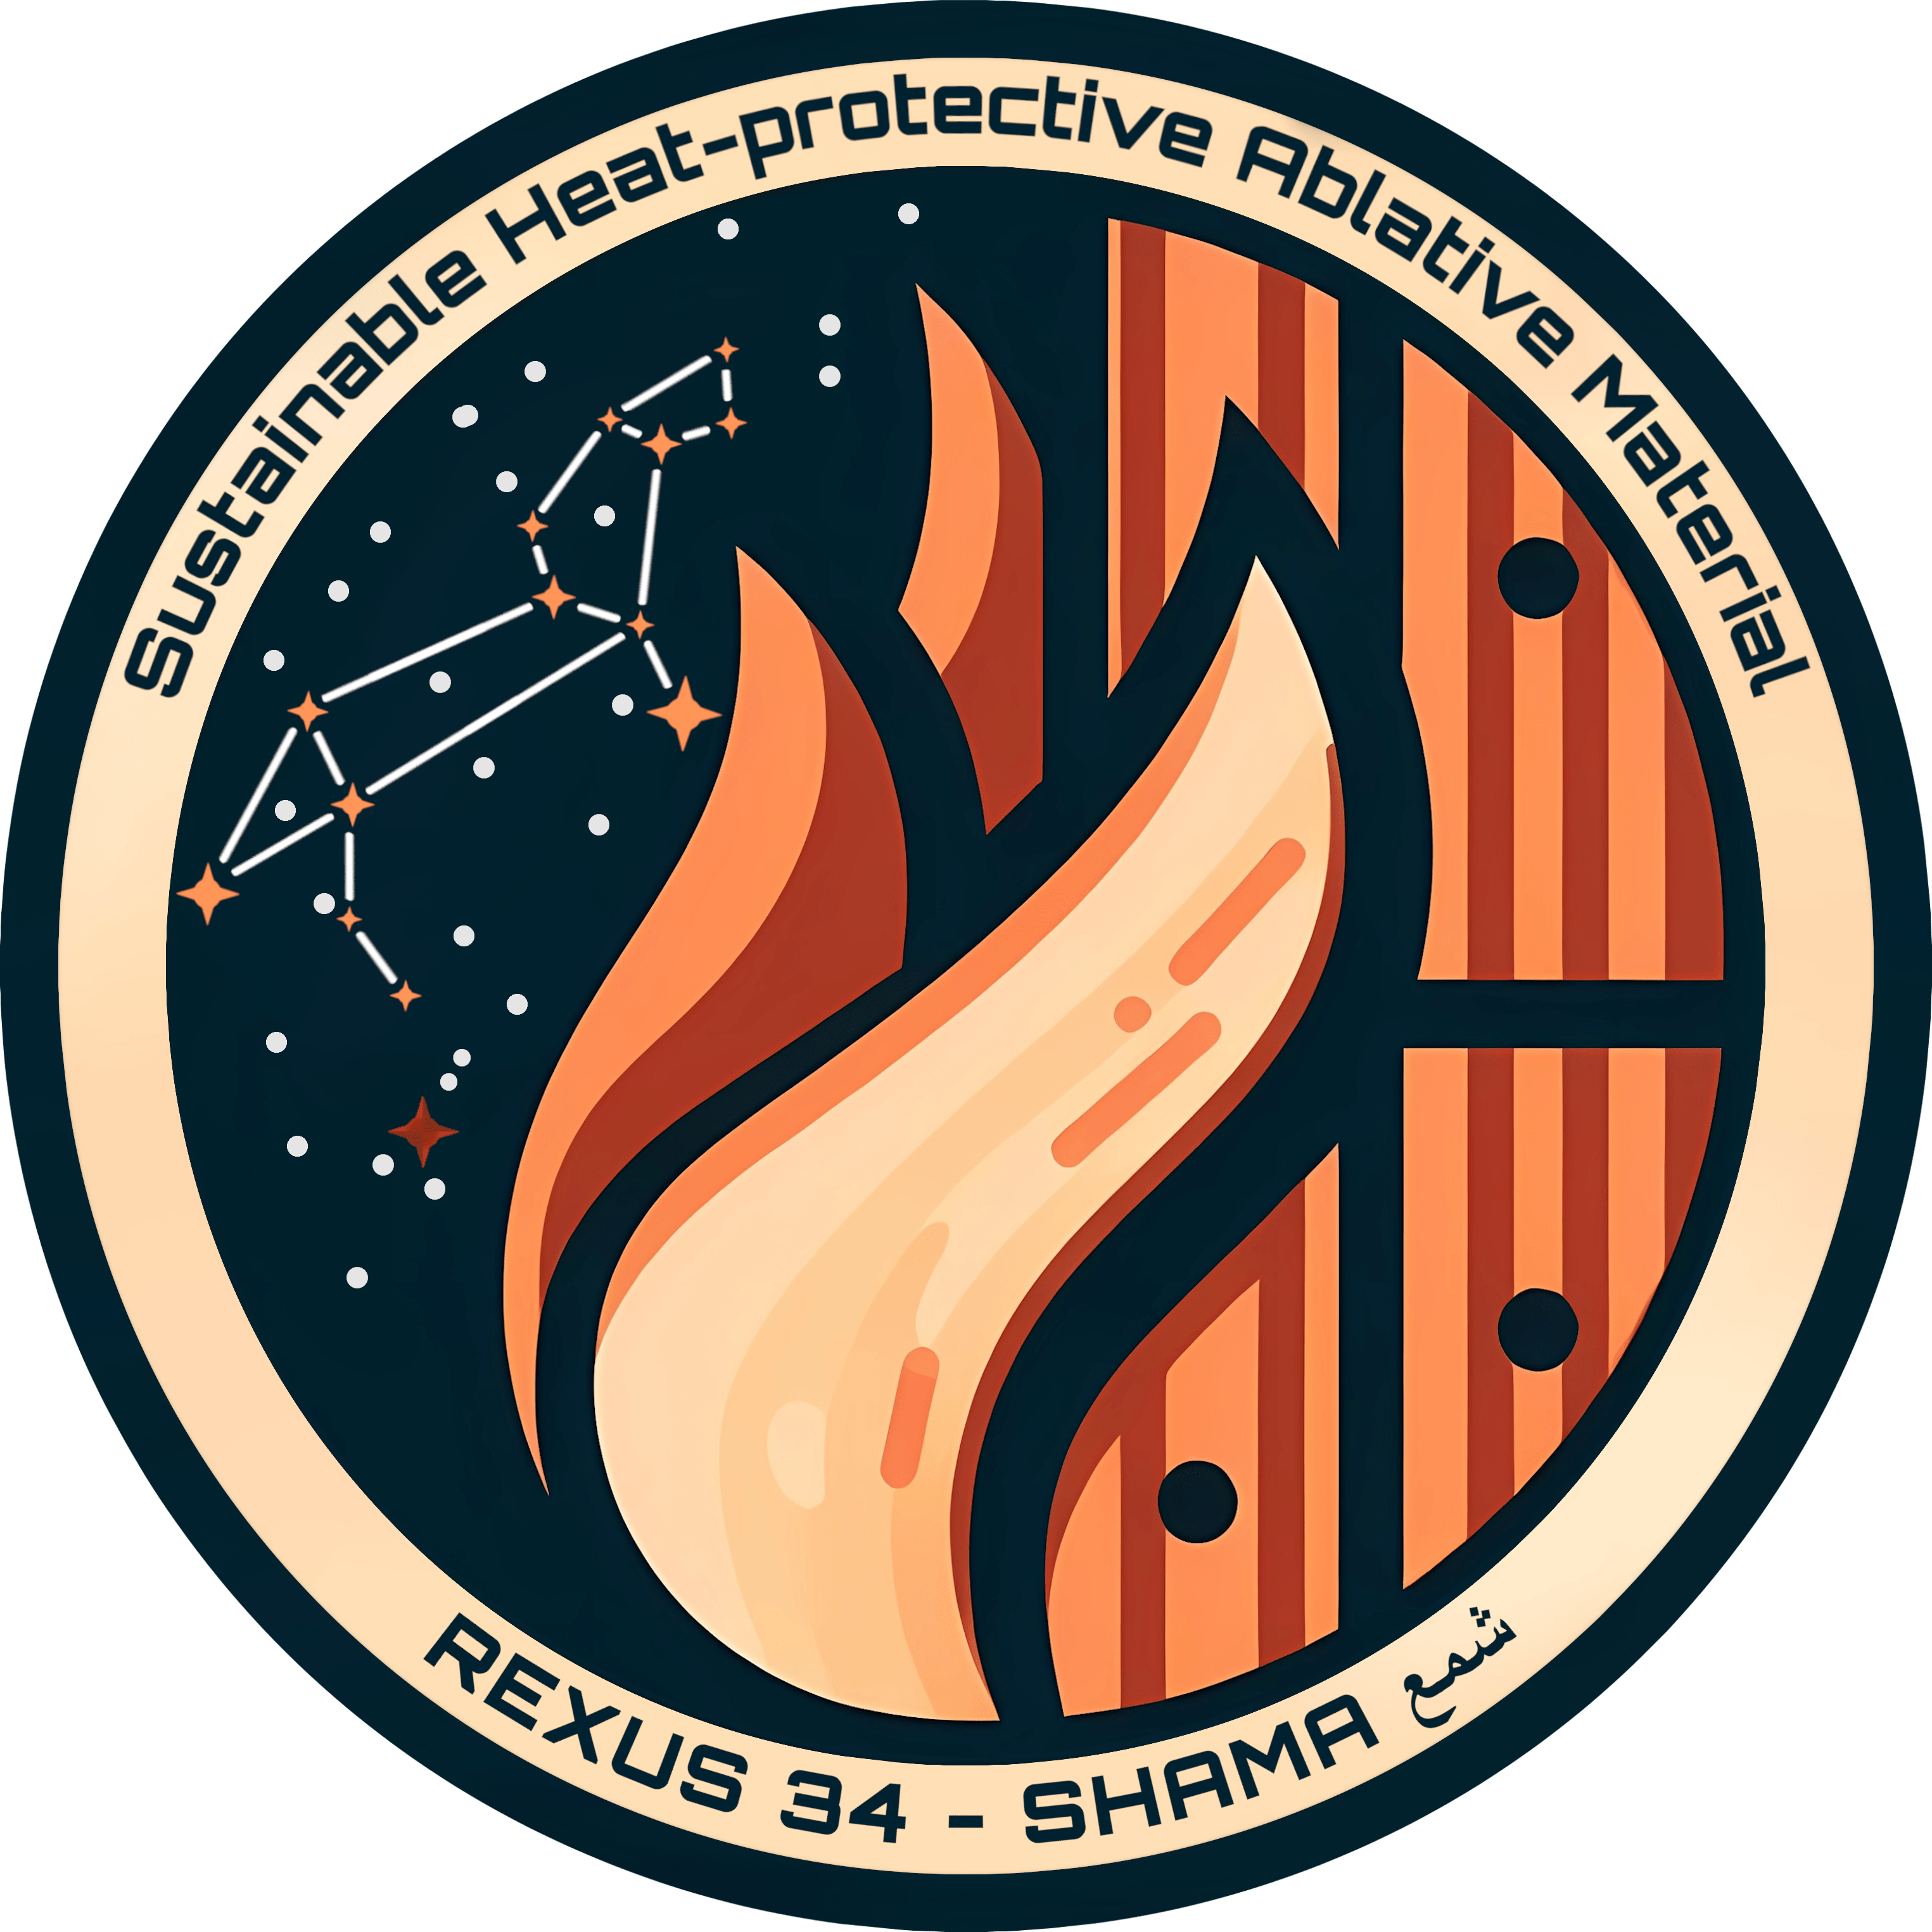 Rundes Logo einer Flamme die auf Holz trifft, daneben das Sternenbild Löwe und dem Stern "SHAMA" extra markiert.
Außen rum die Schriftzüge "Sustainable Heat-protactive Ablative Material" und "REXUS 34 - SHAMA"